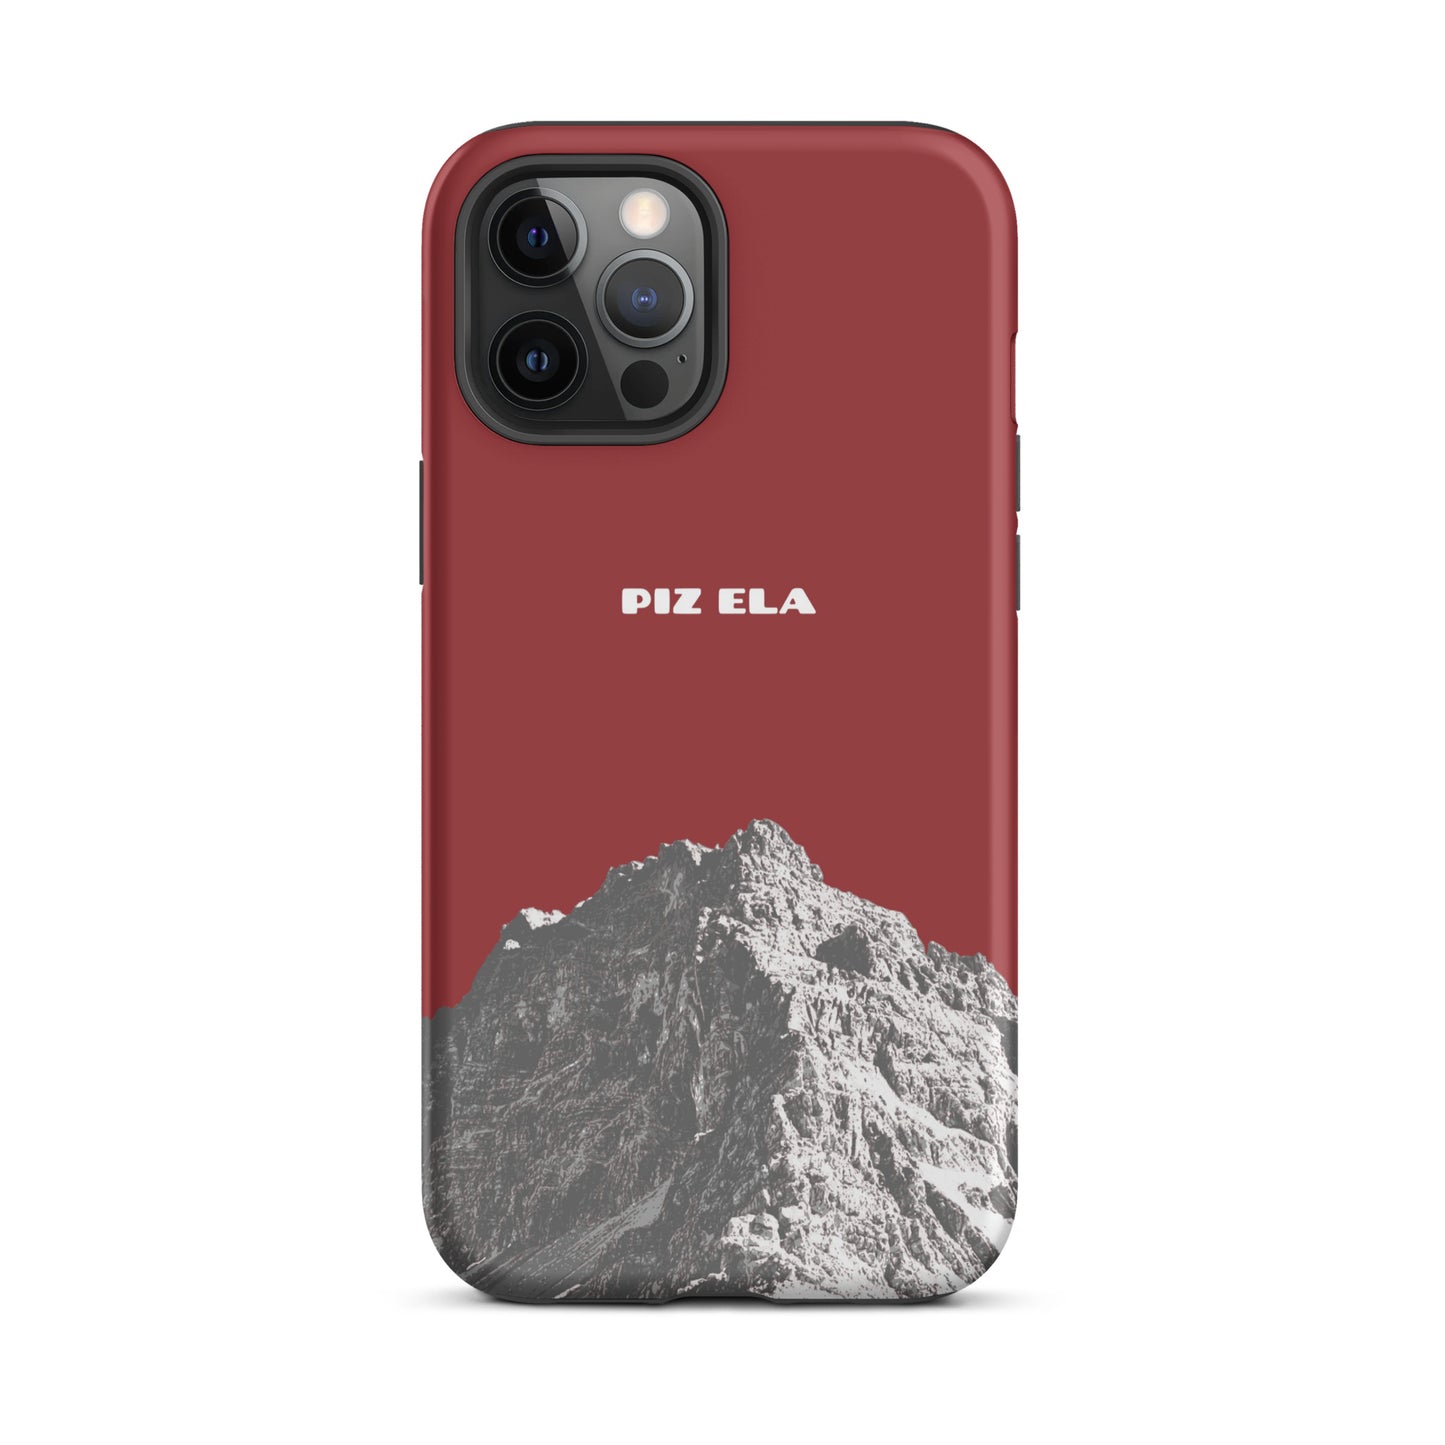 iPhone Case - Piz Ela - Rot